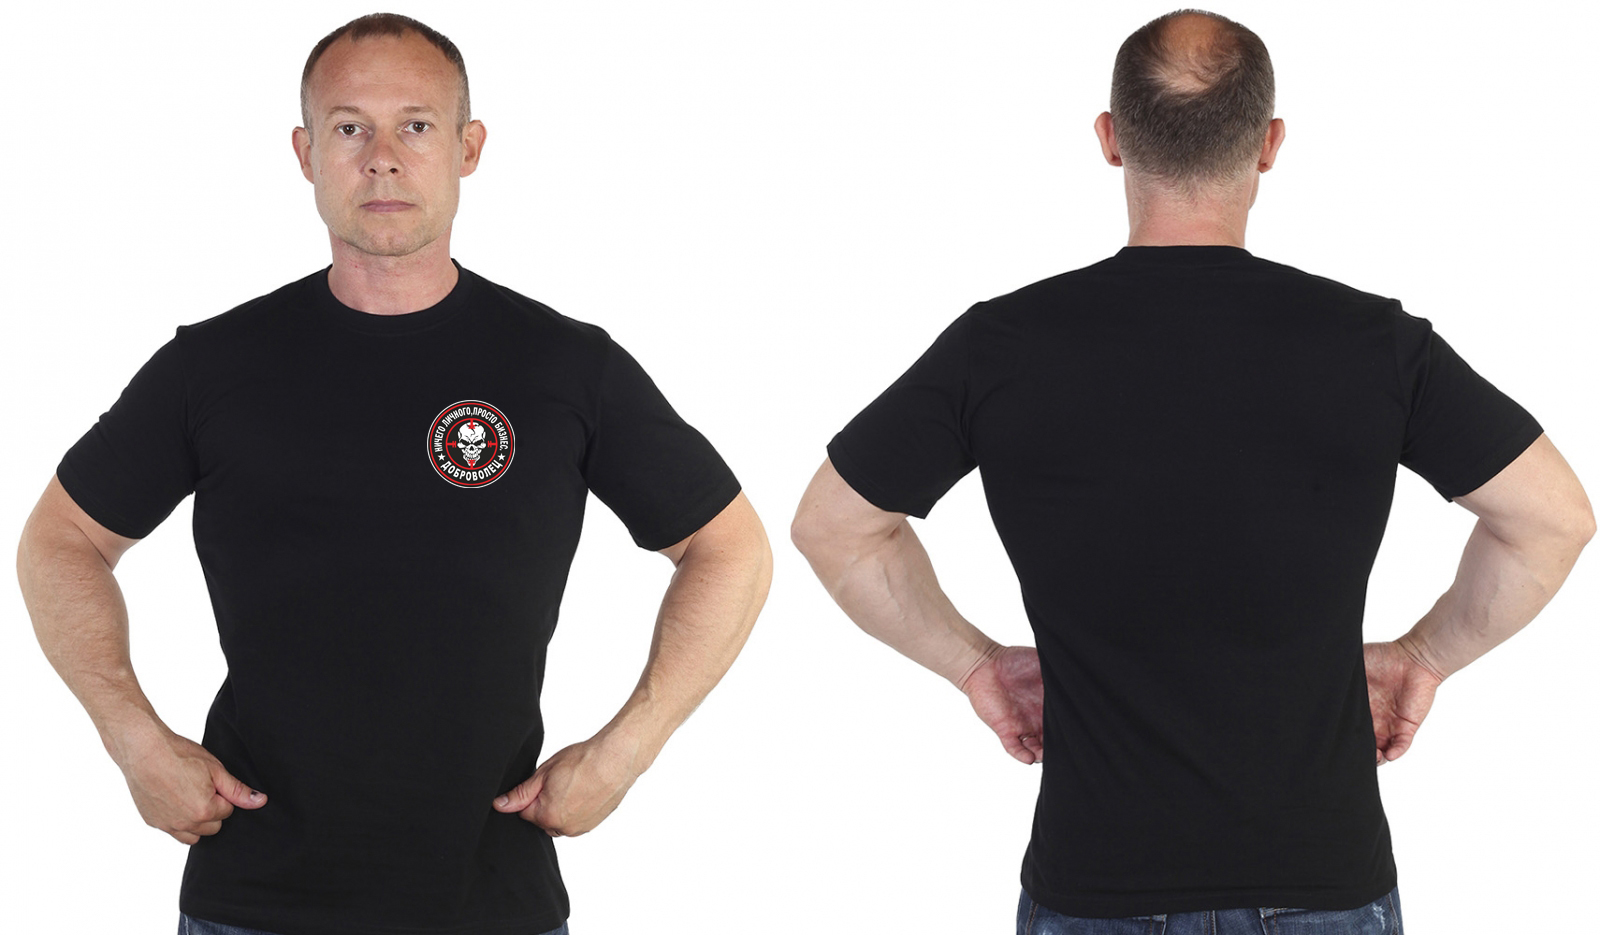 Купить мужскую черную футболку с термоаппликацией Доброволец выгодно